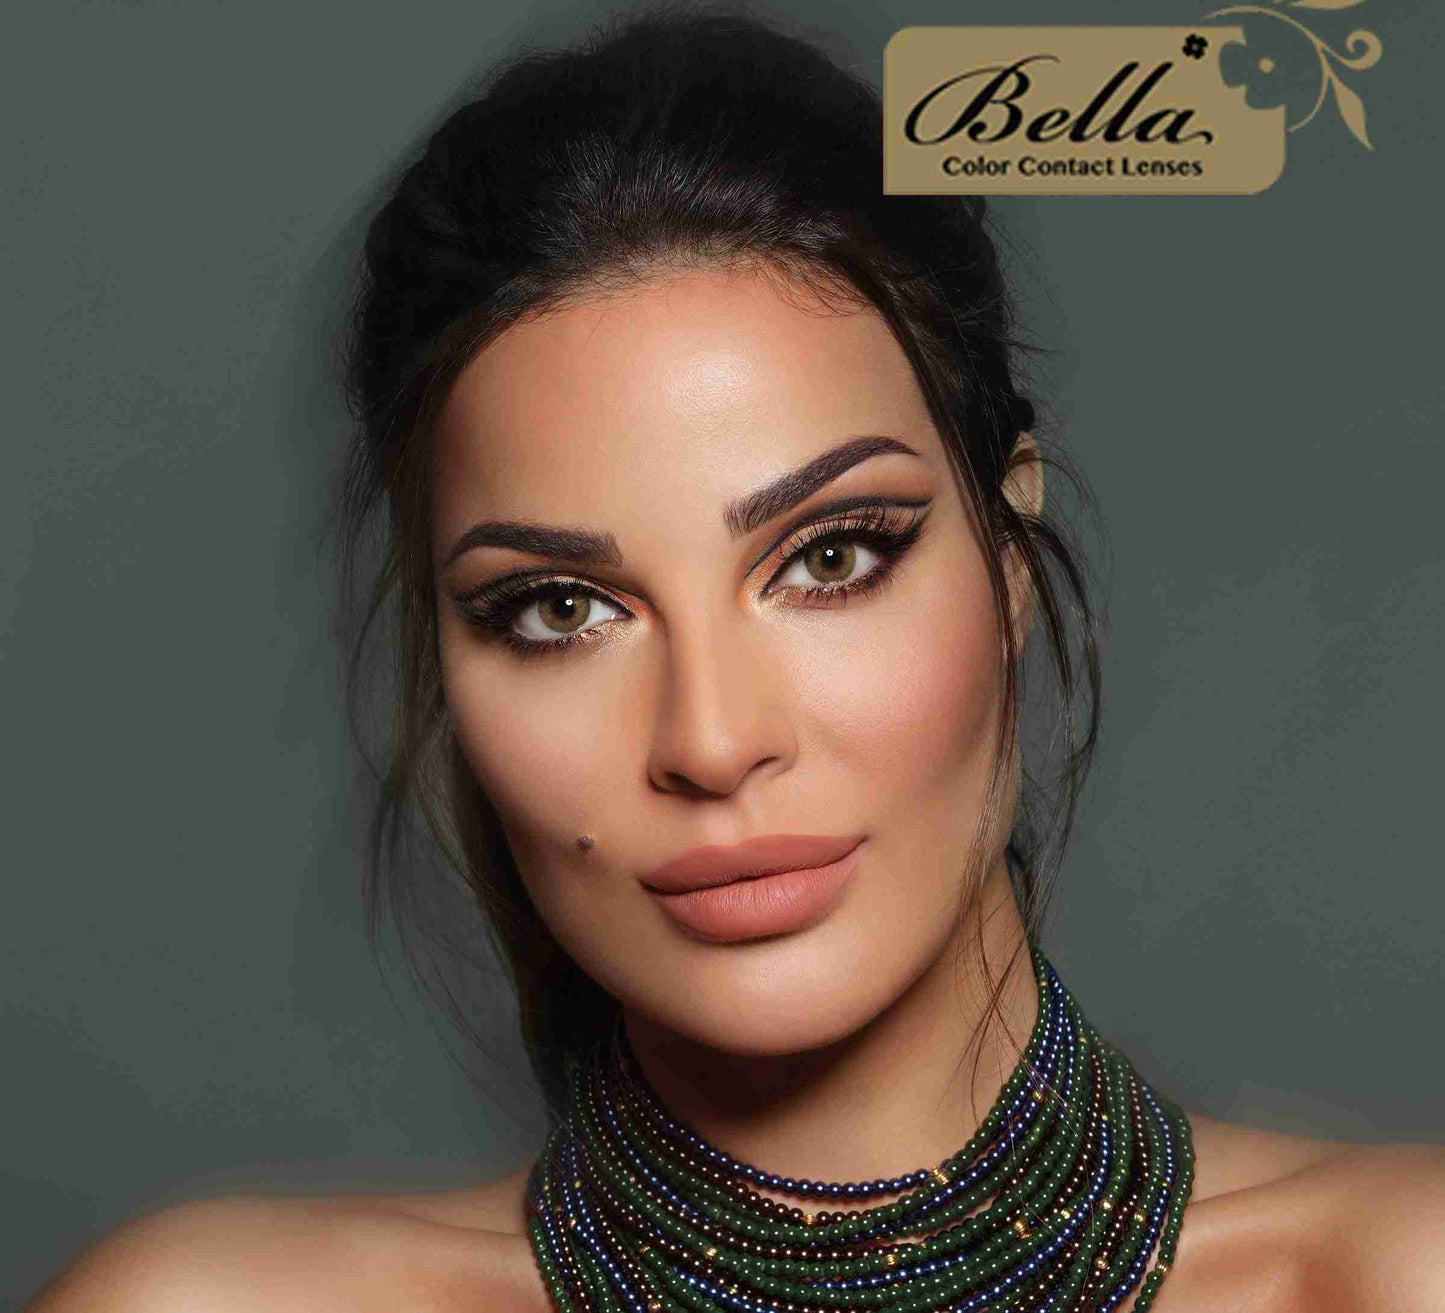 Elite Silky Gold - Bella Contact Lenses Oman